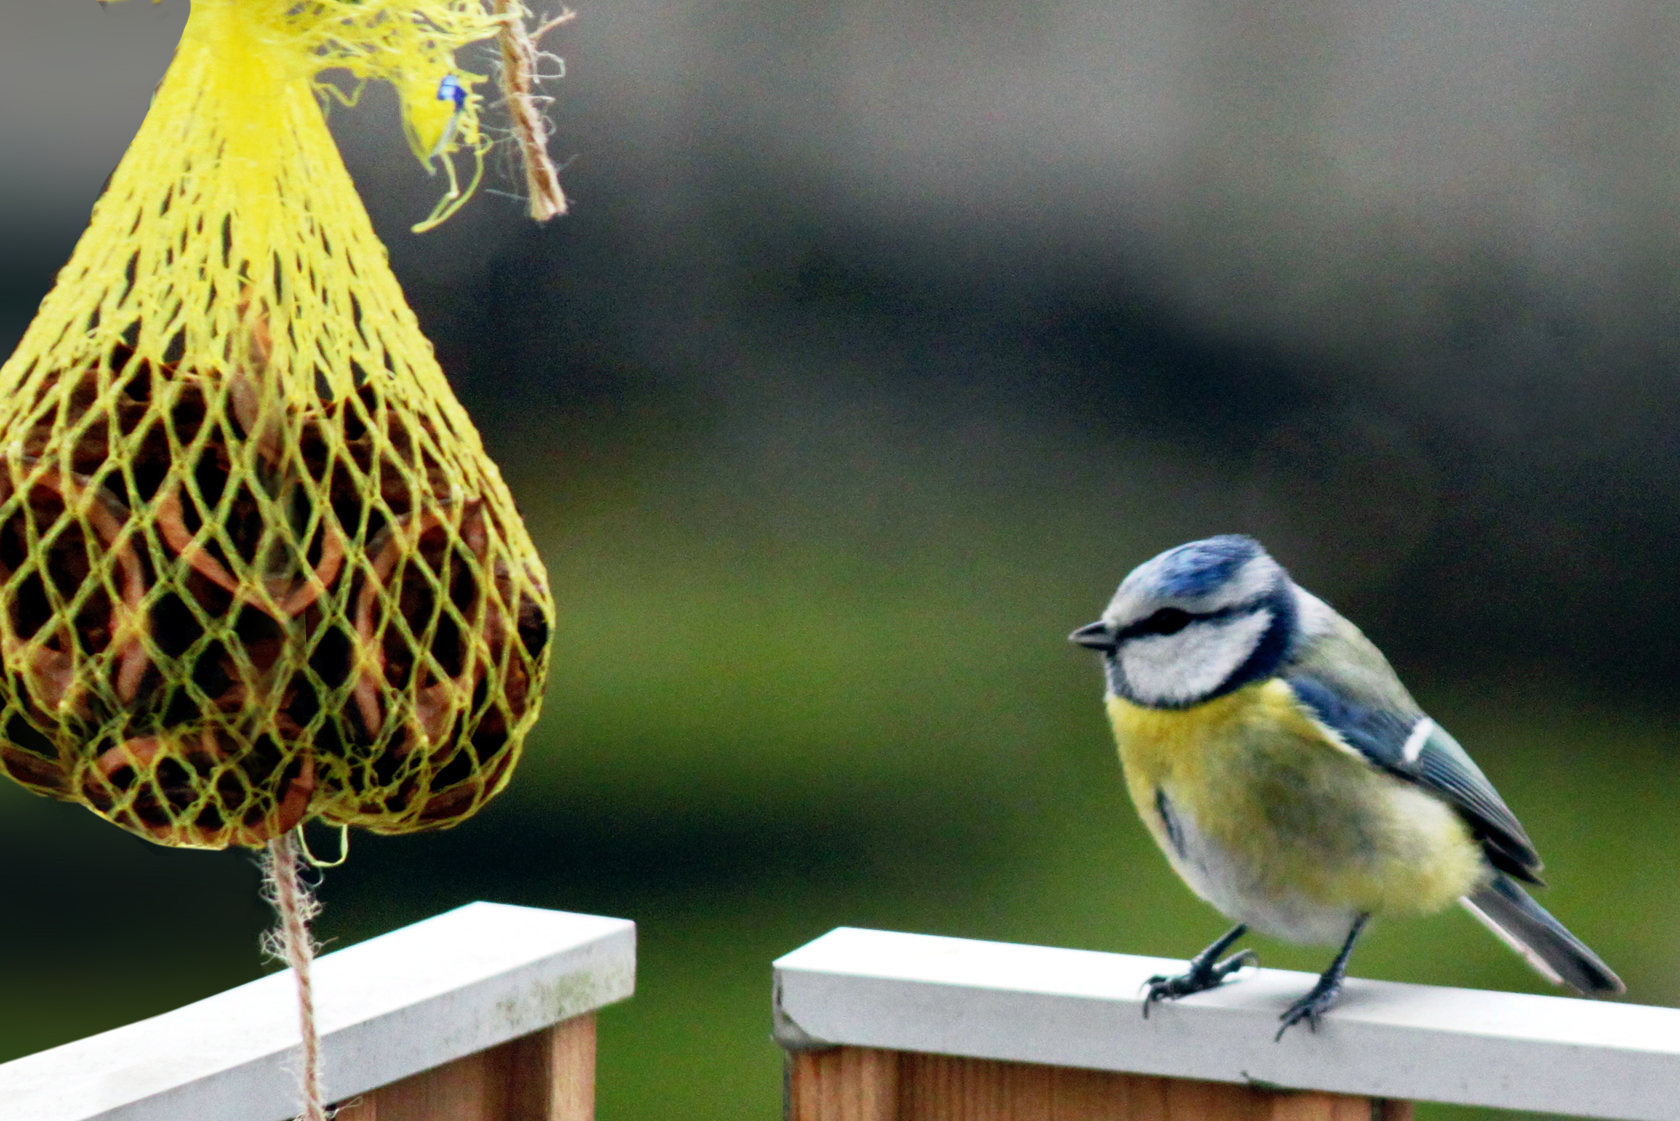 Nourrir sainement les oiseaux du jardin - Mon jardin d'idées